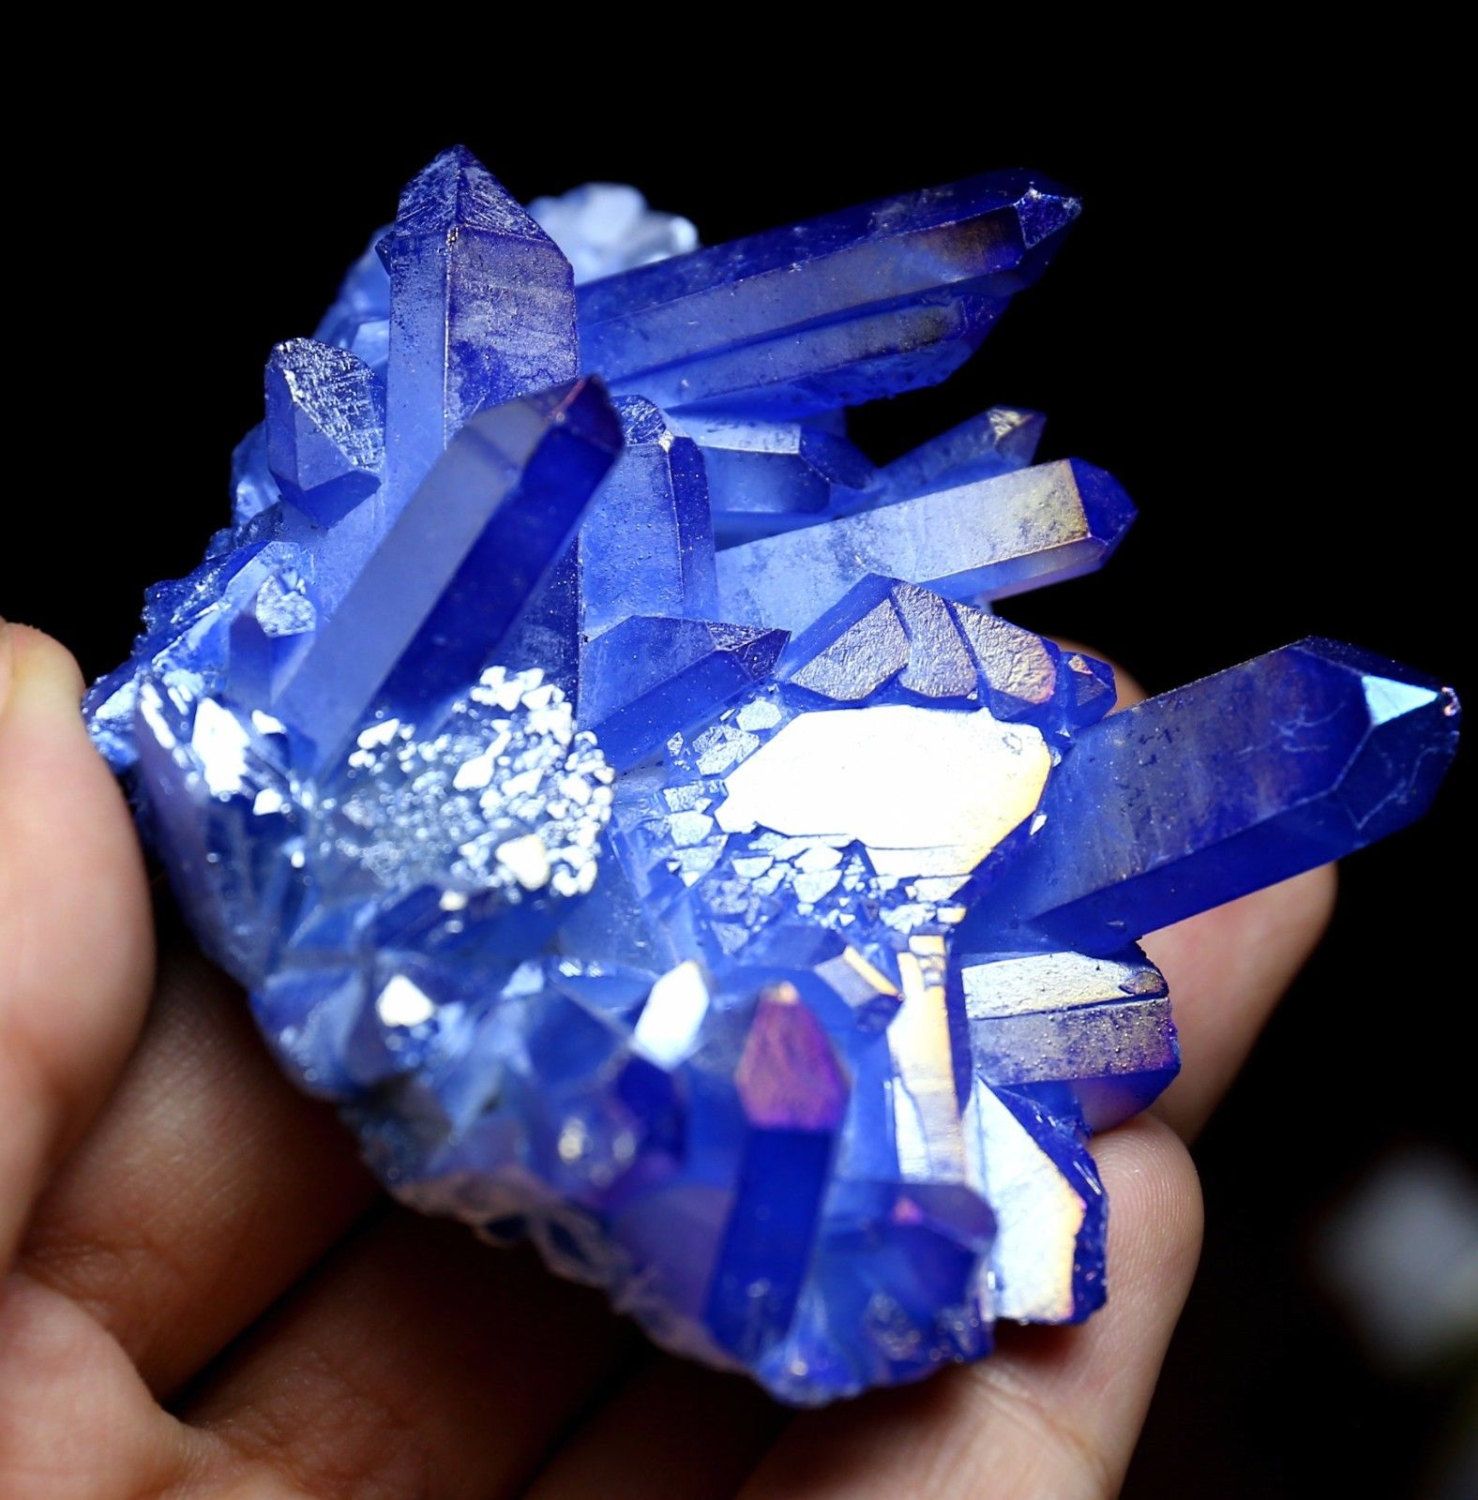 Aqua crystal